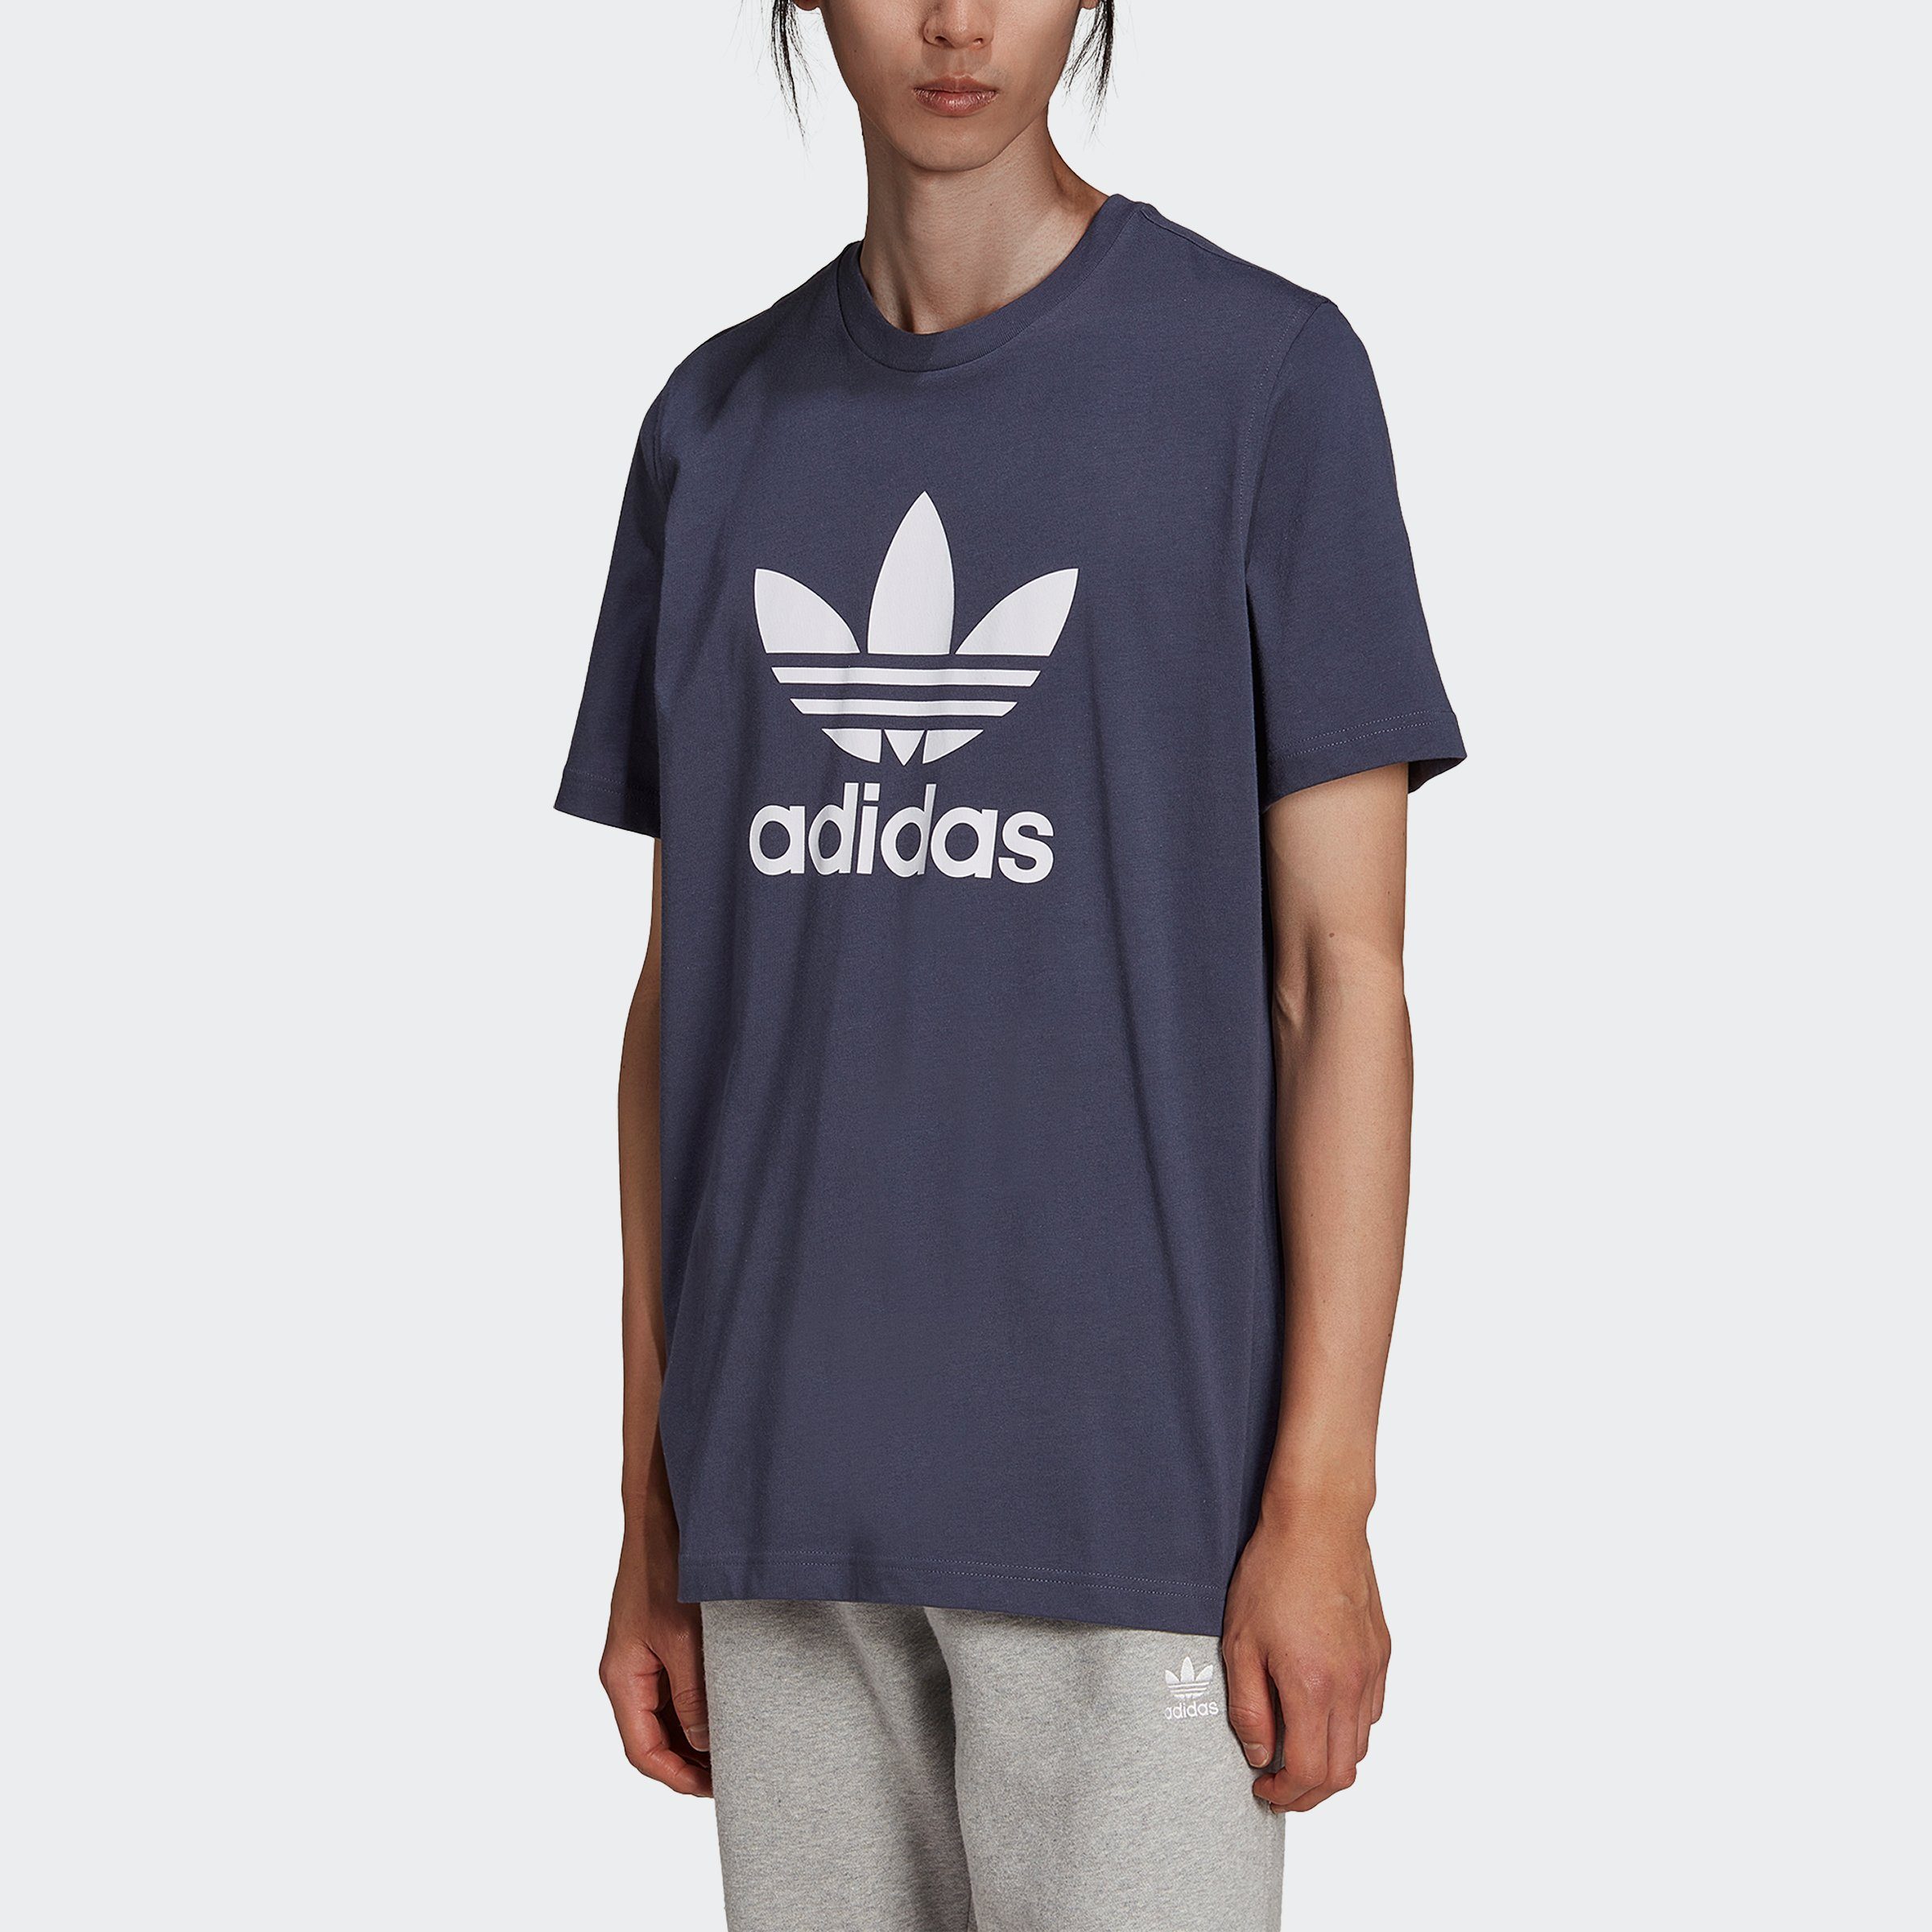 adidas Originals T-Shirt »ADICOLOR CLASSICS TREFOIL« online kaufen | OTTO